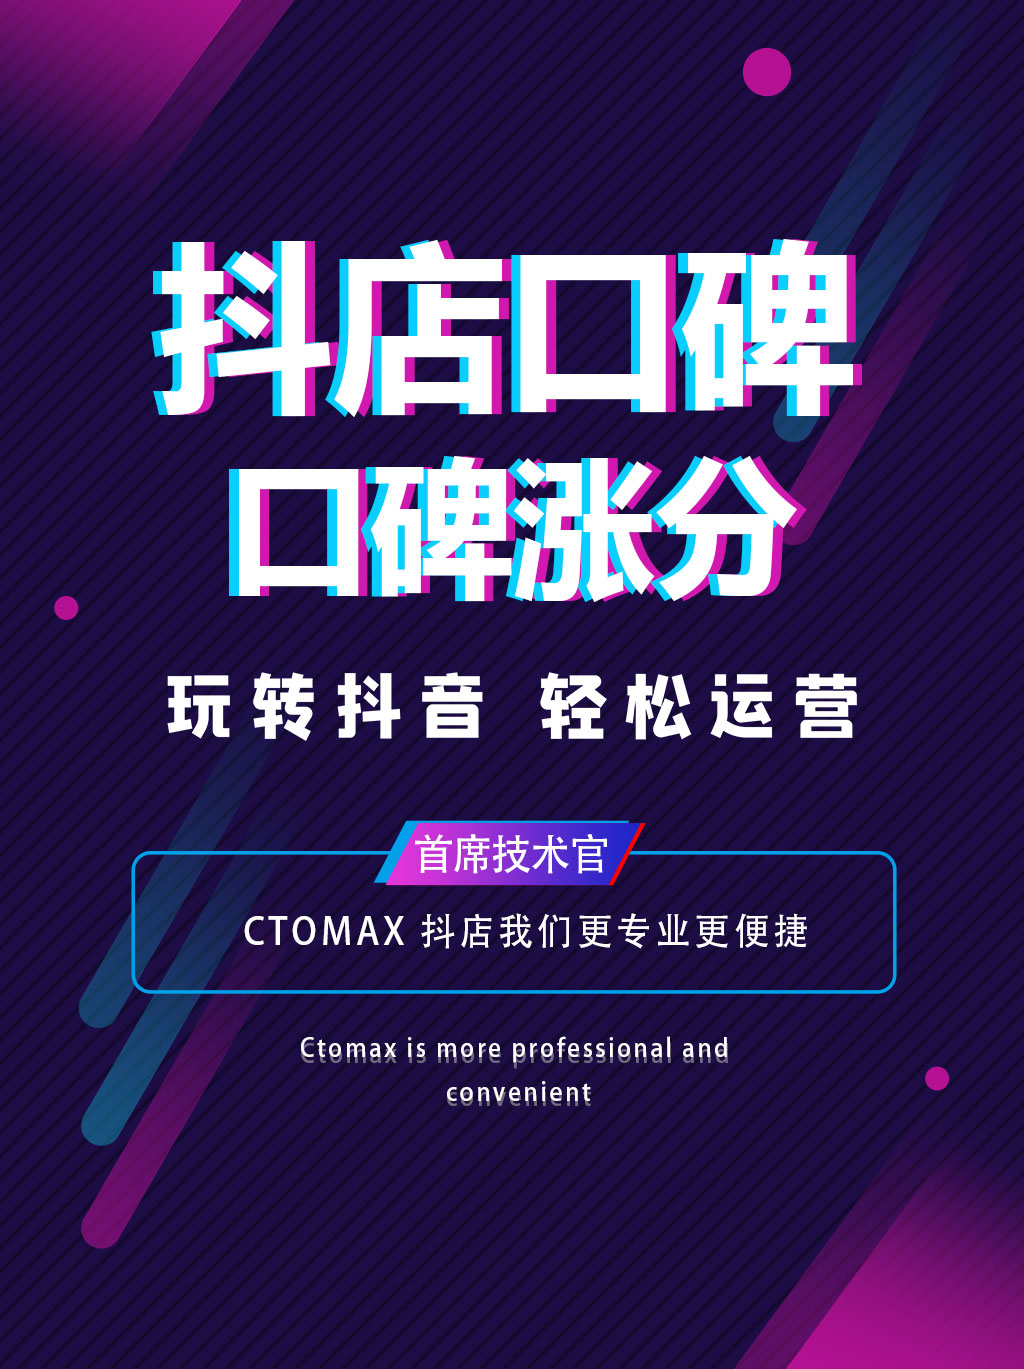 ctomax首席技术官-抖音口碑分提升